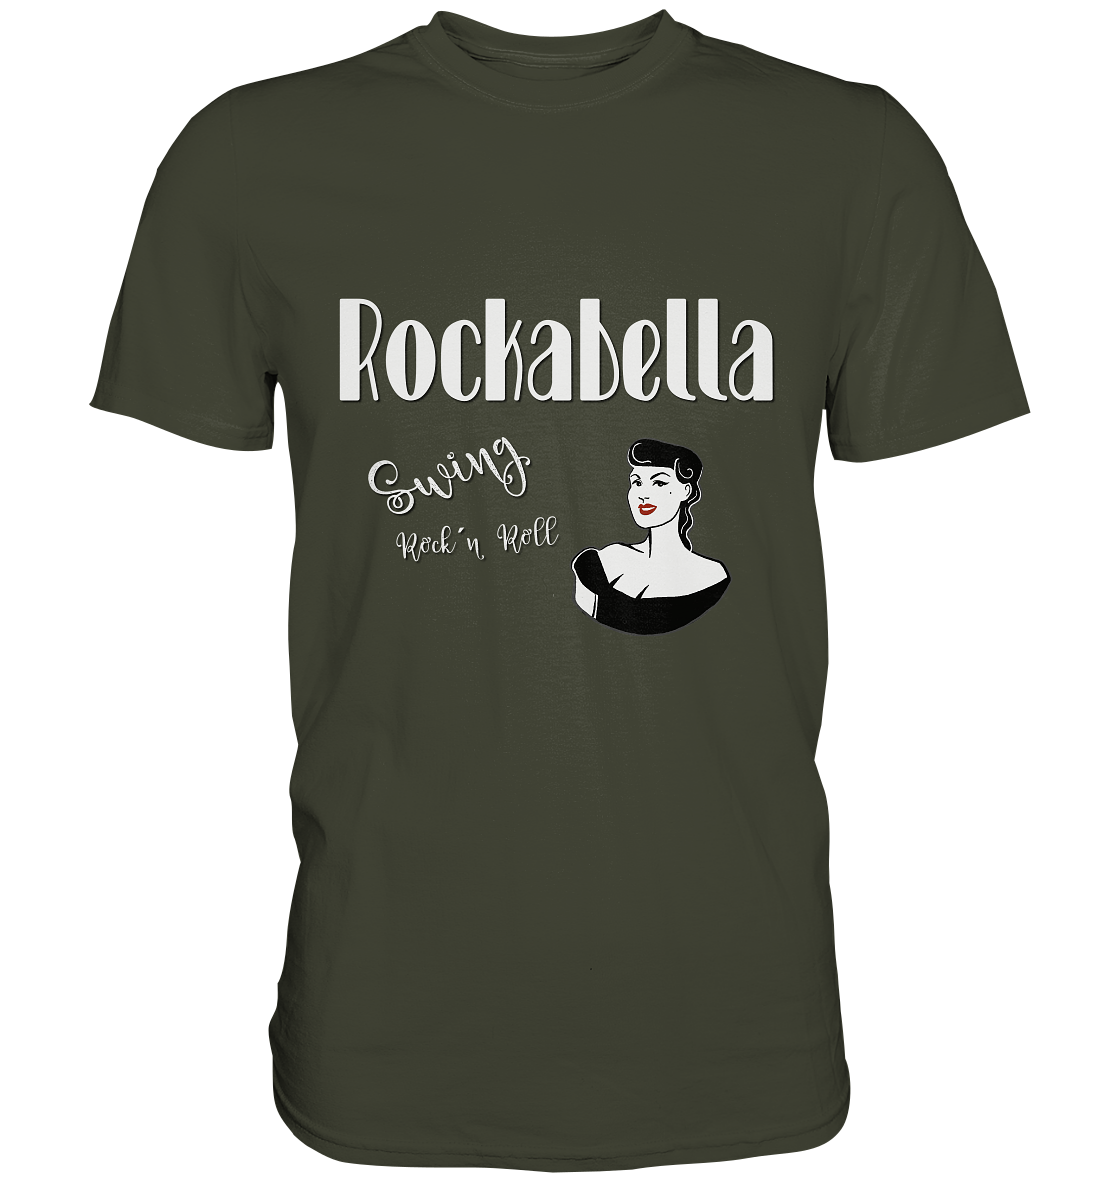 Rockabella. Swing. Rockybilly - Unisex Premium Shirt